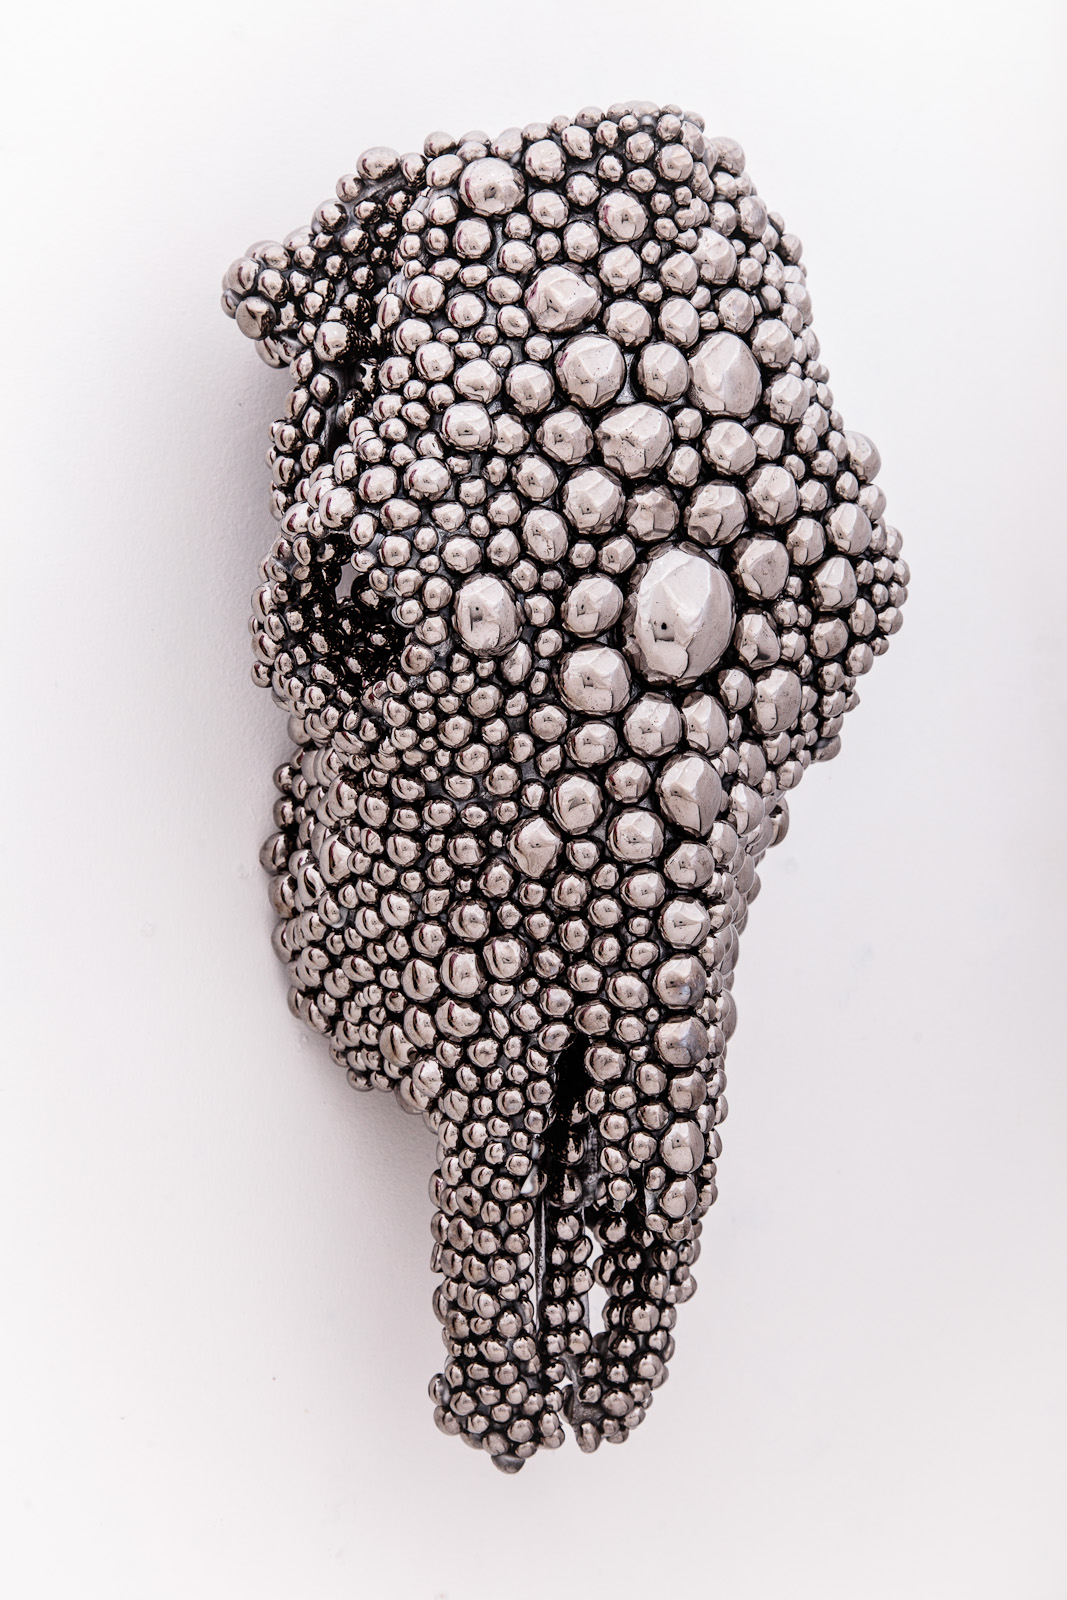 Juz Kitson – sculpture contemporaine / Organic sculptures